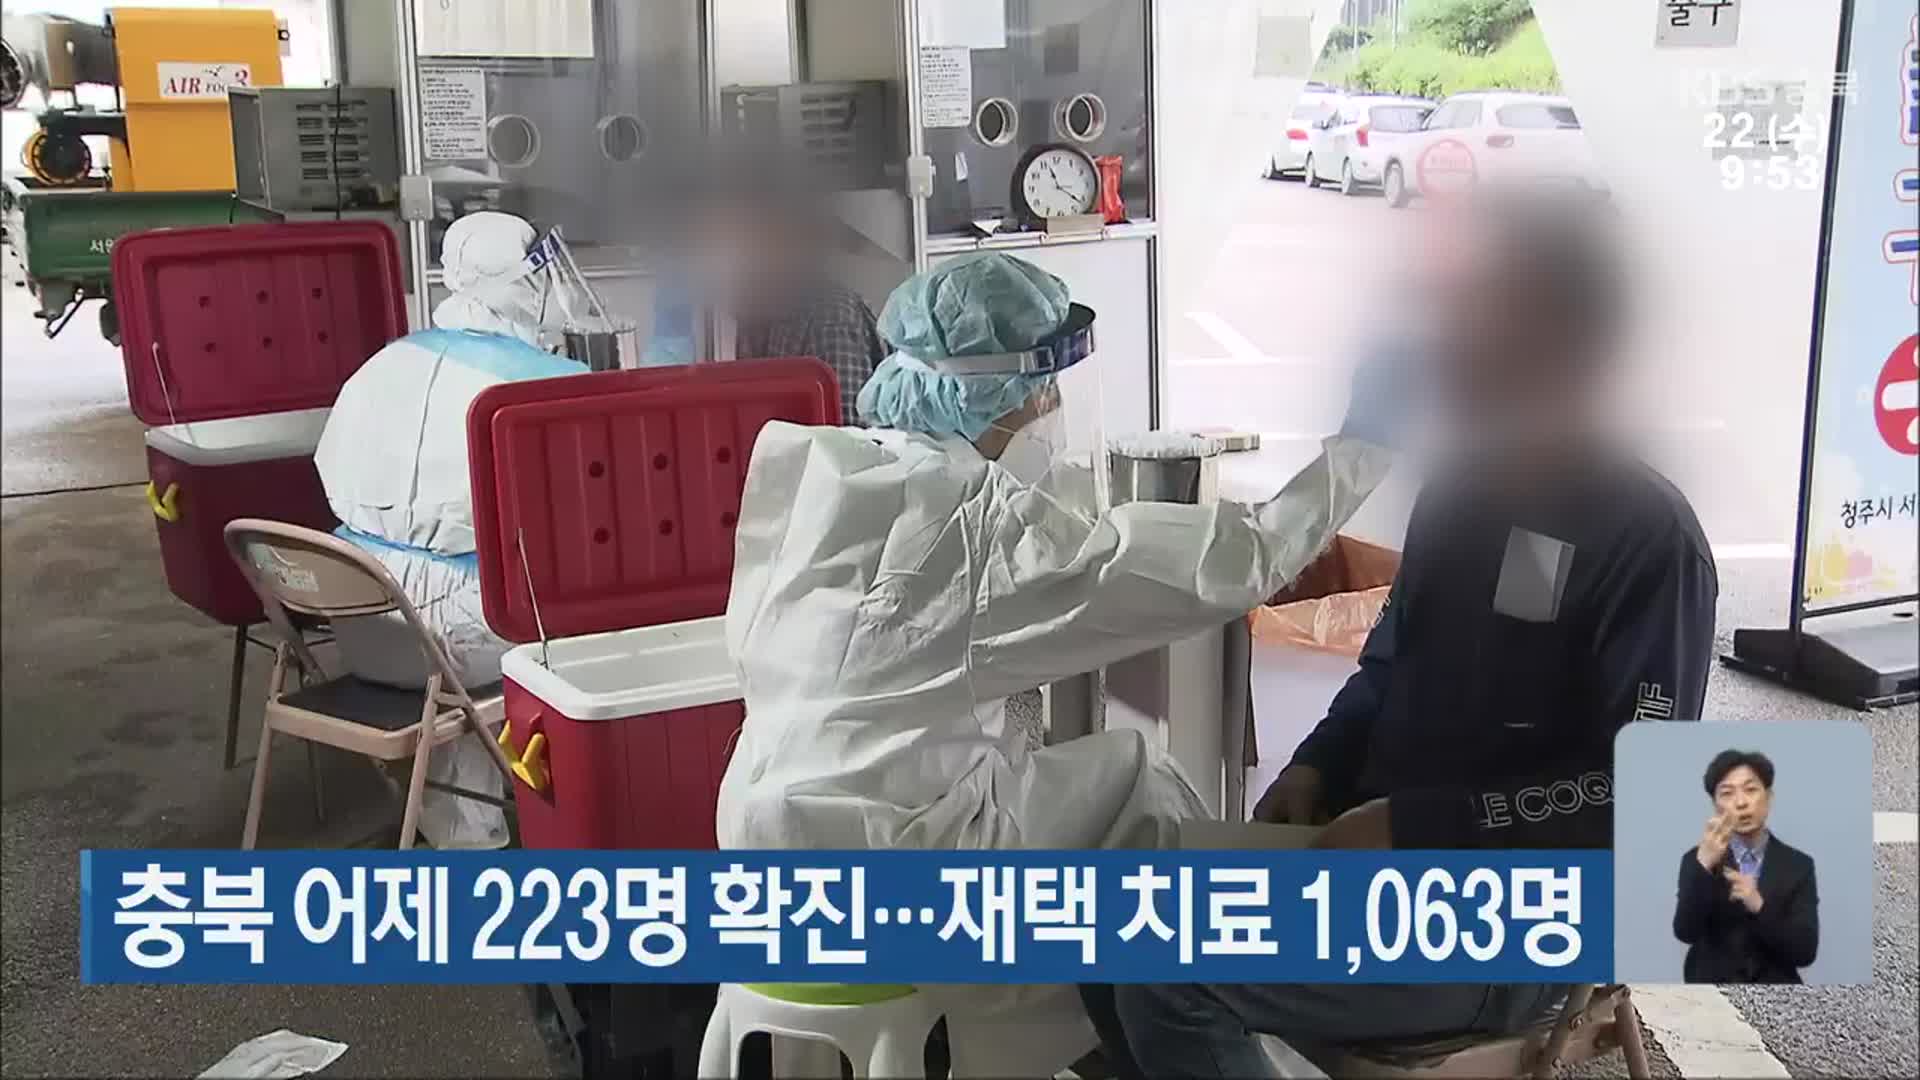 충북 어제 223명 확진…재택 치료 1,063명